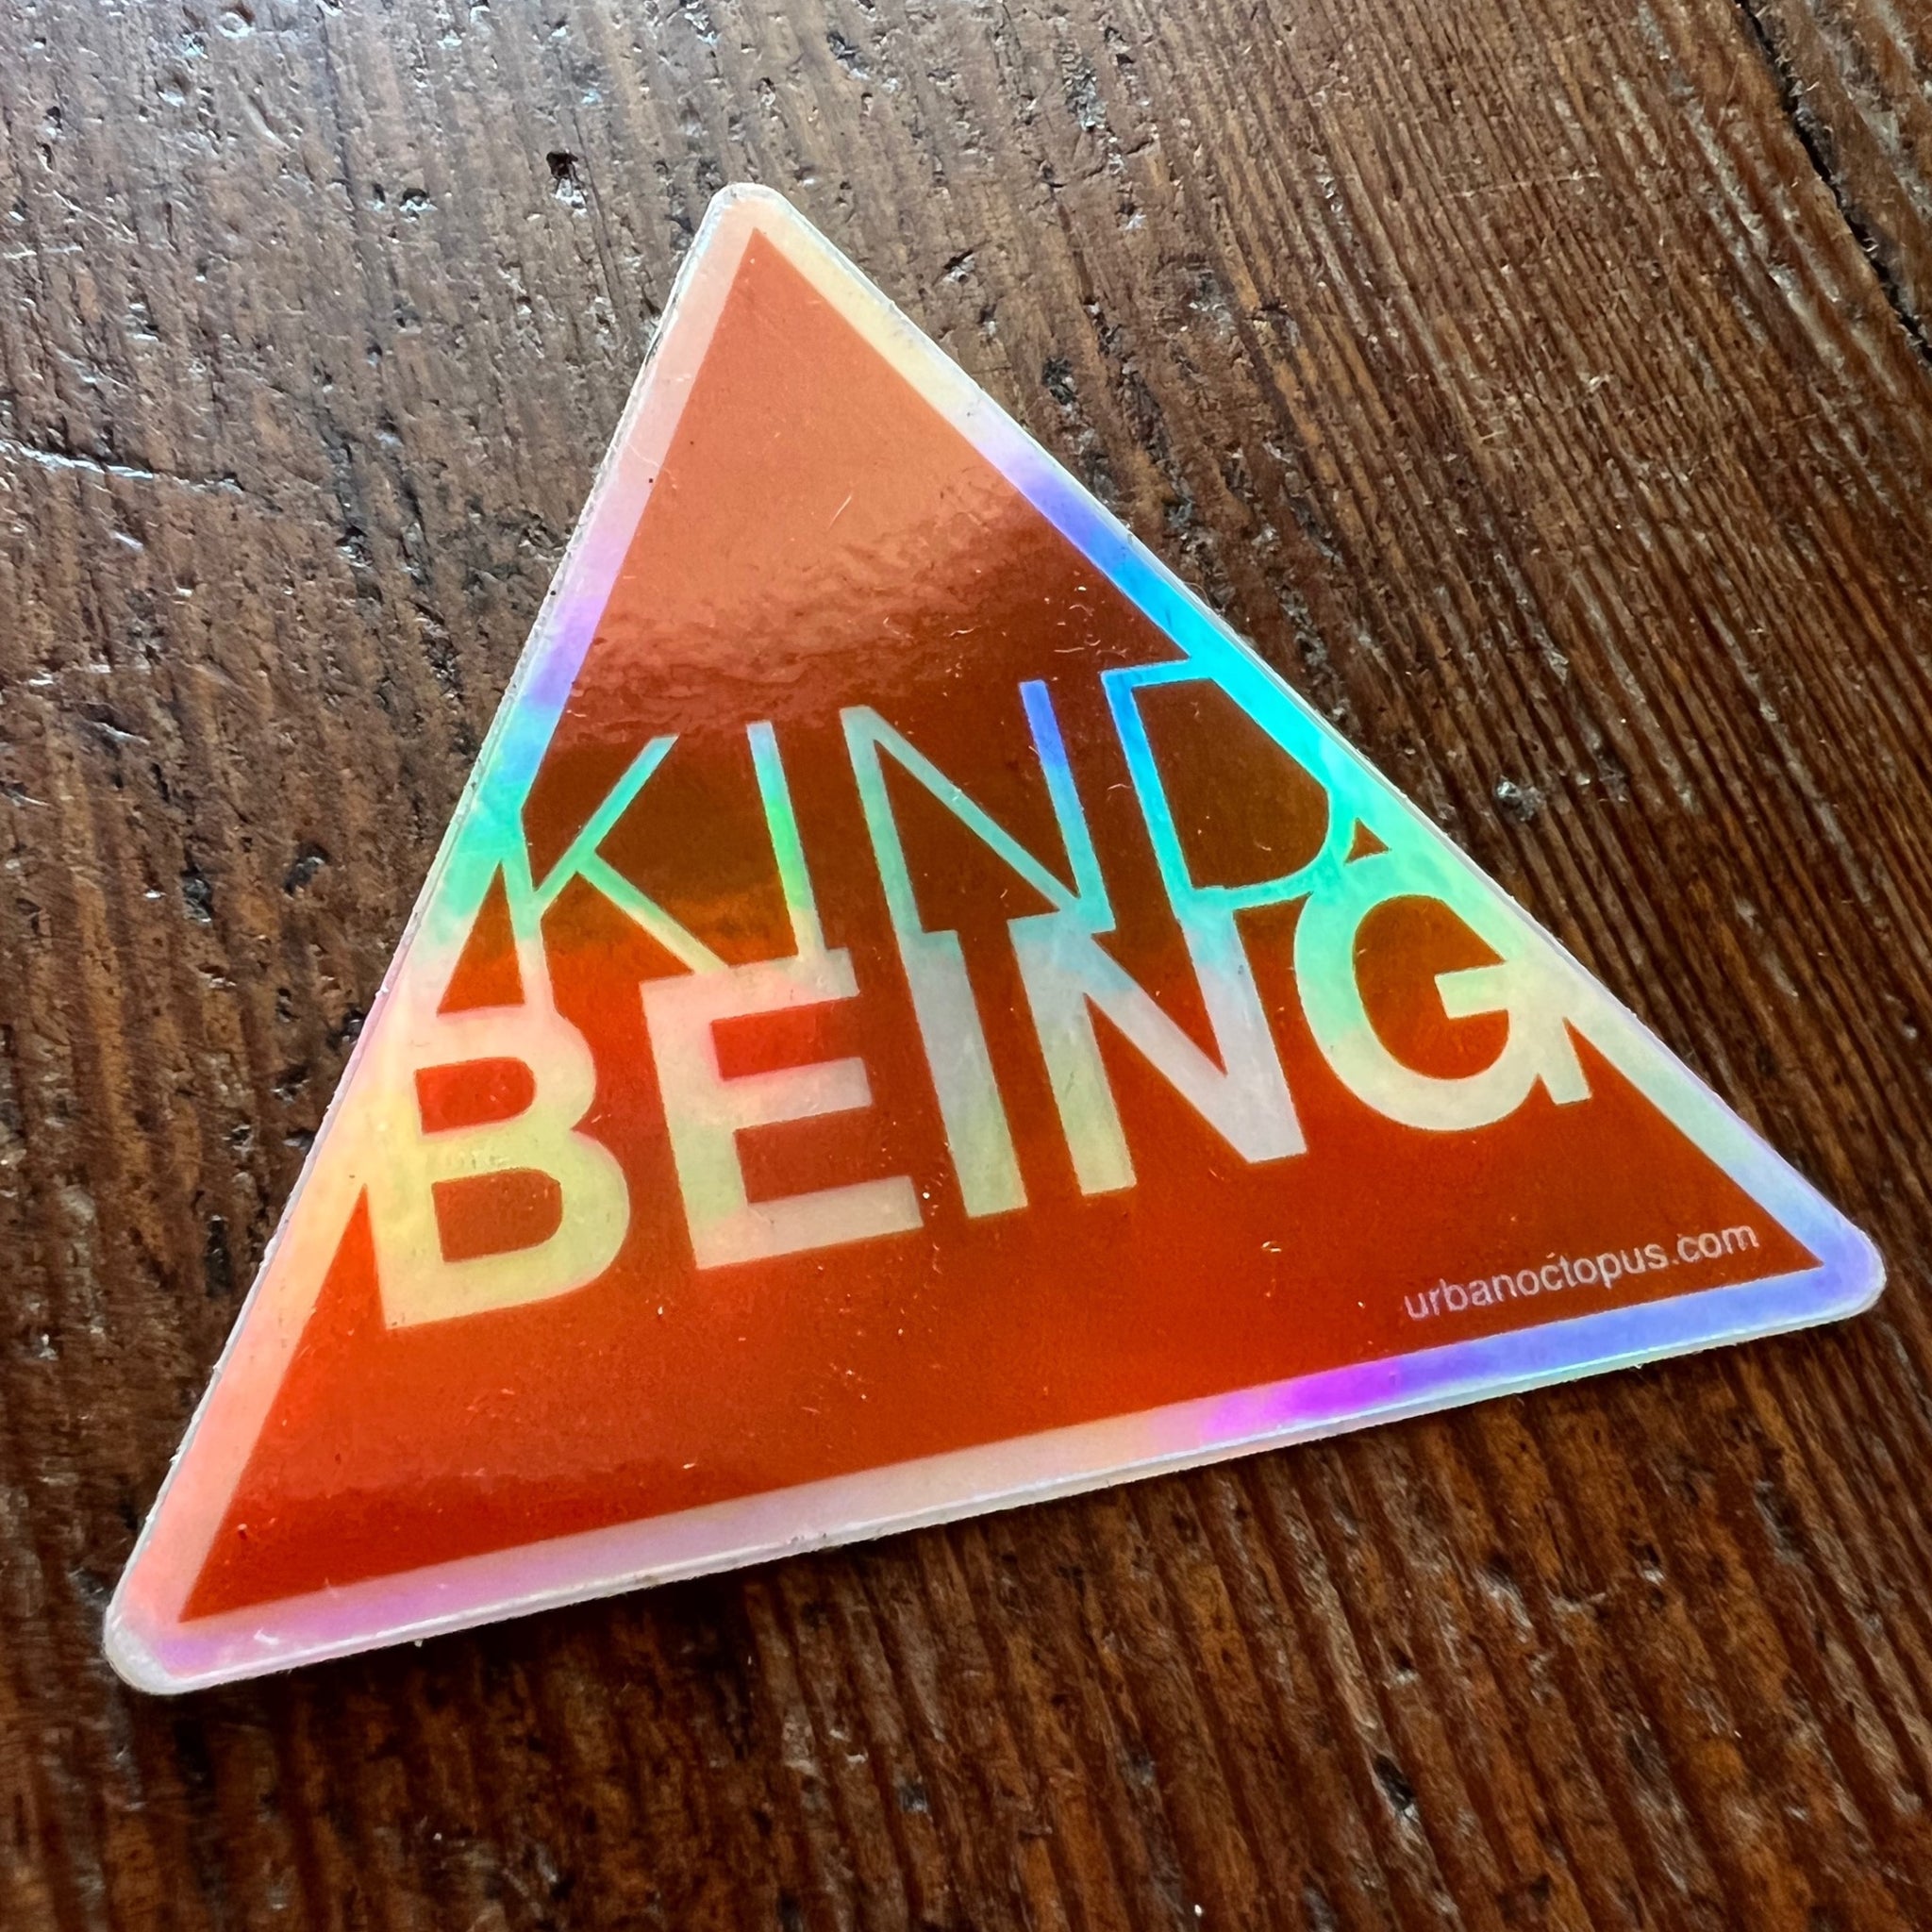 Kind Being Sticker